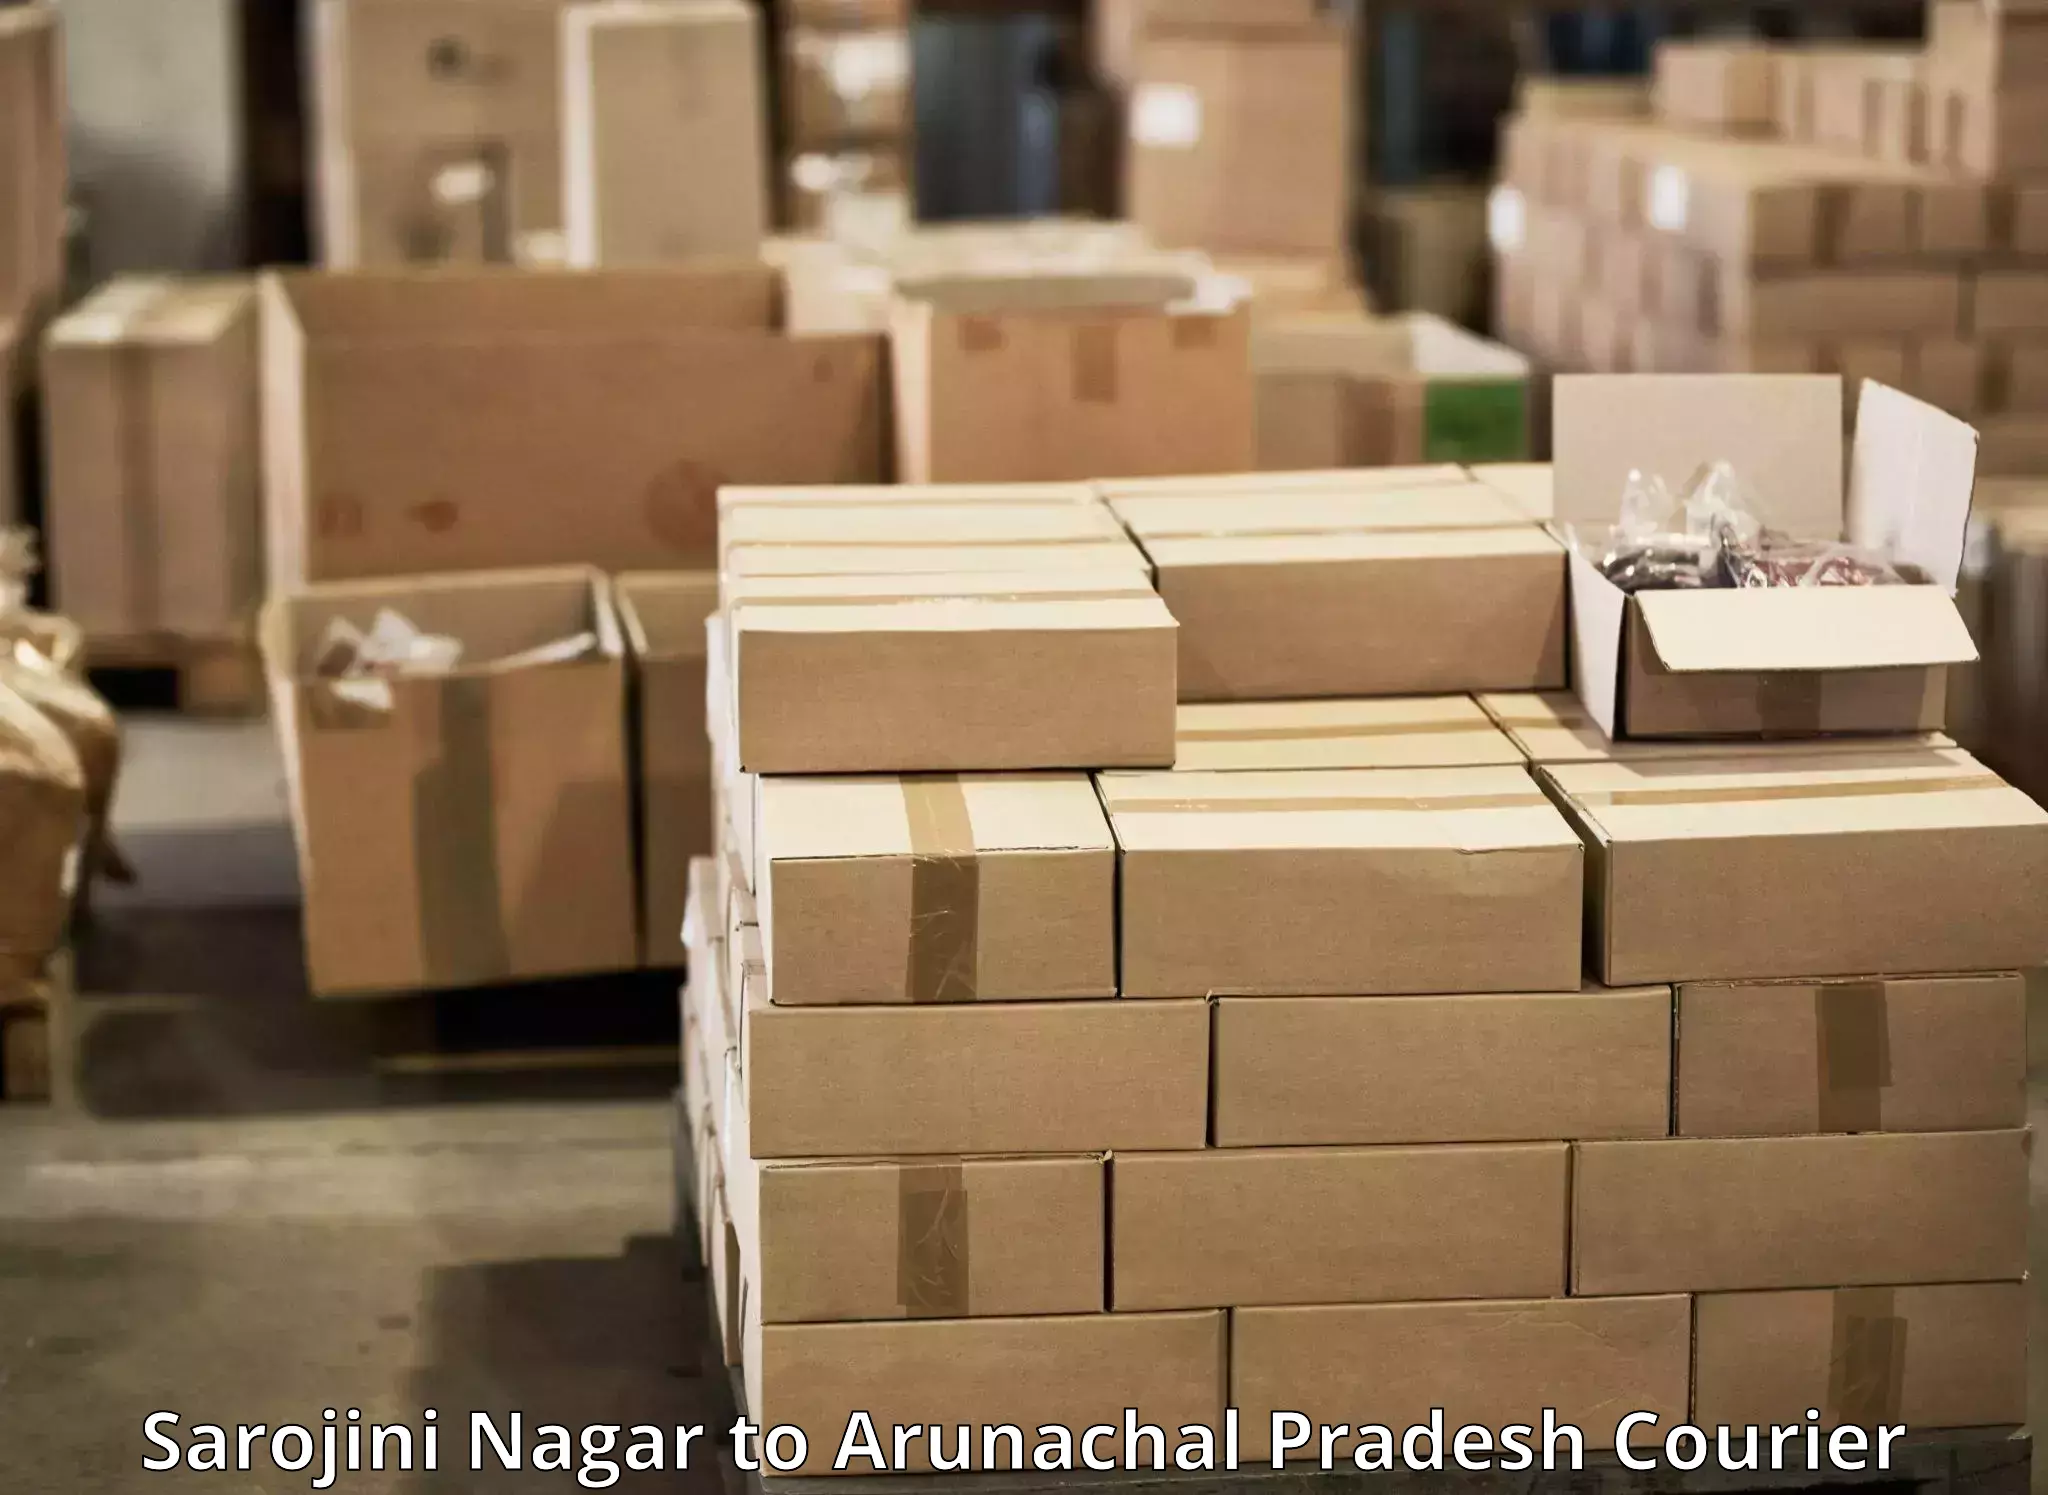 Reliable logistics providers Sarojini Nagar to Changlang